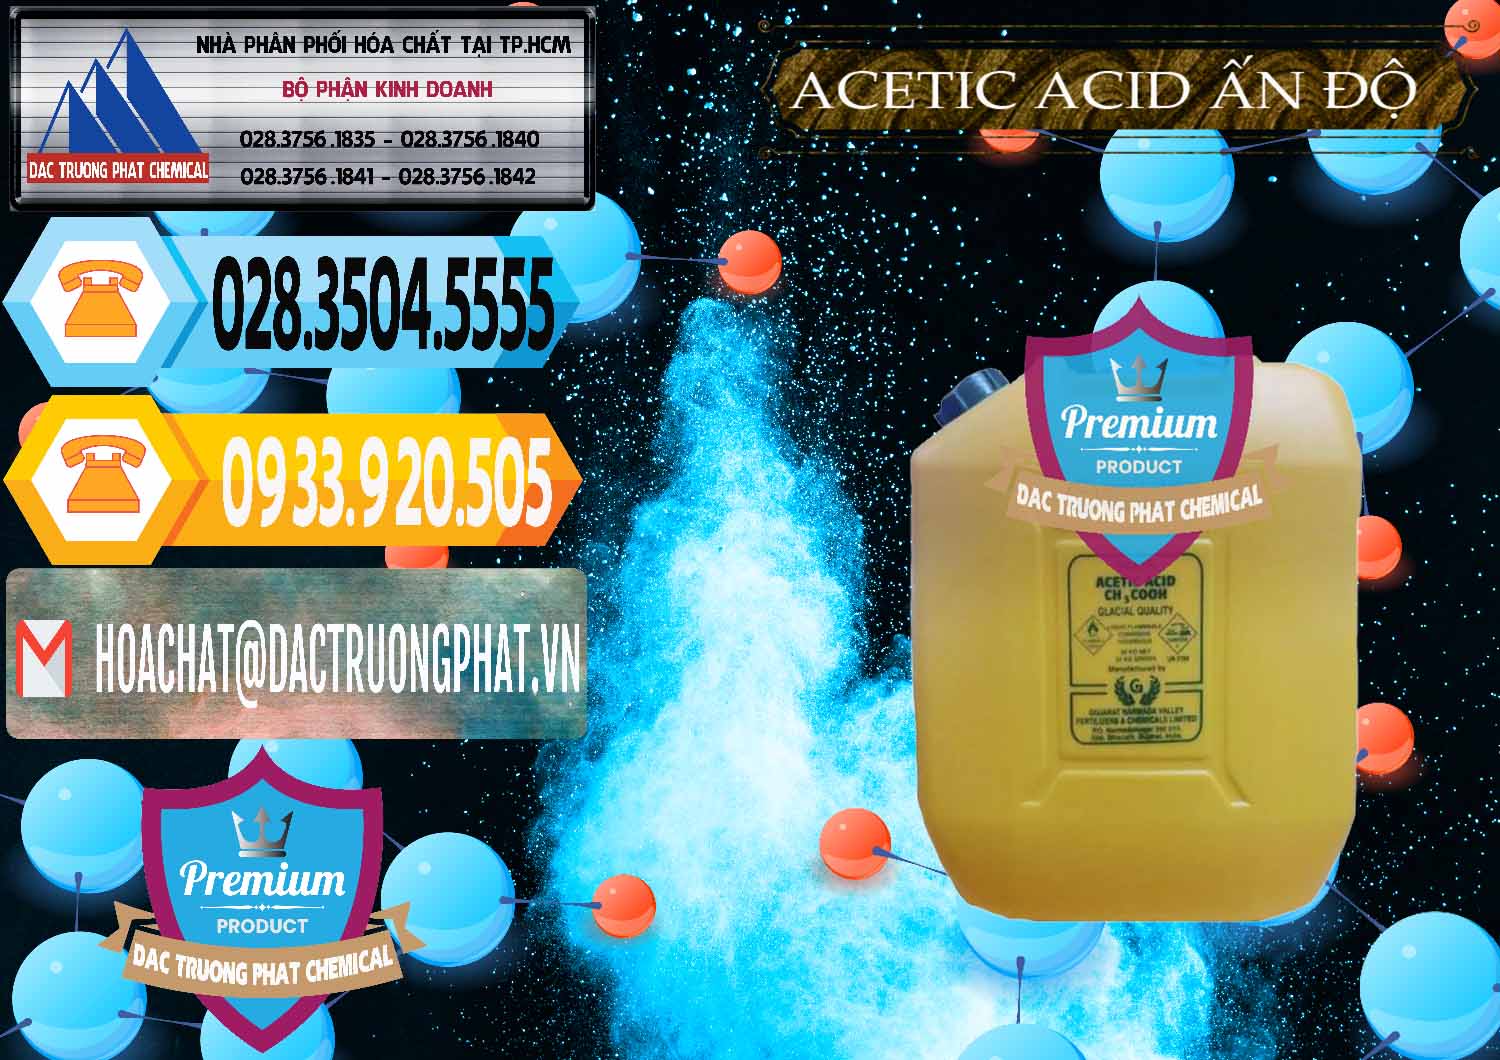 Nơi cung ứng và bán Acetic Acid – Axit Acetic Ấn Độ India - 0359 - Công ty kinh doanh - phân phối hóa chất tại TP.HCM - hoachattayrua.net